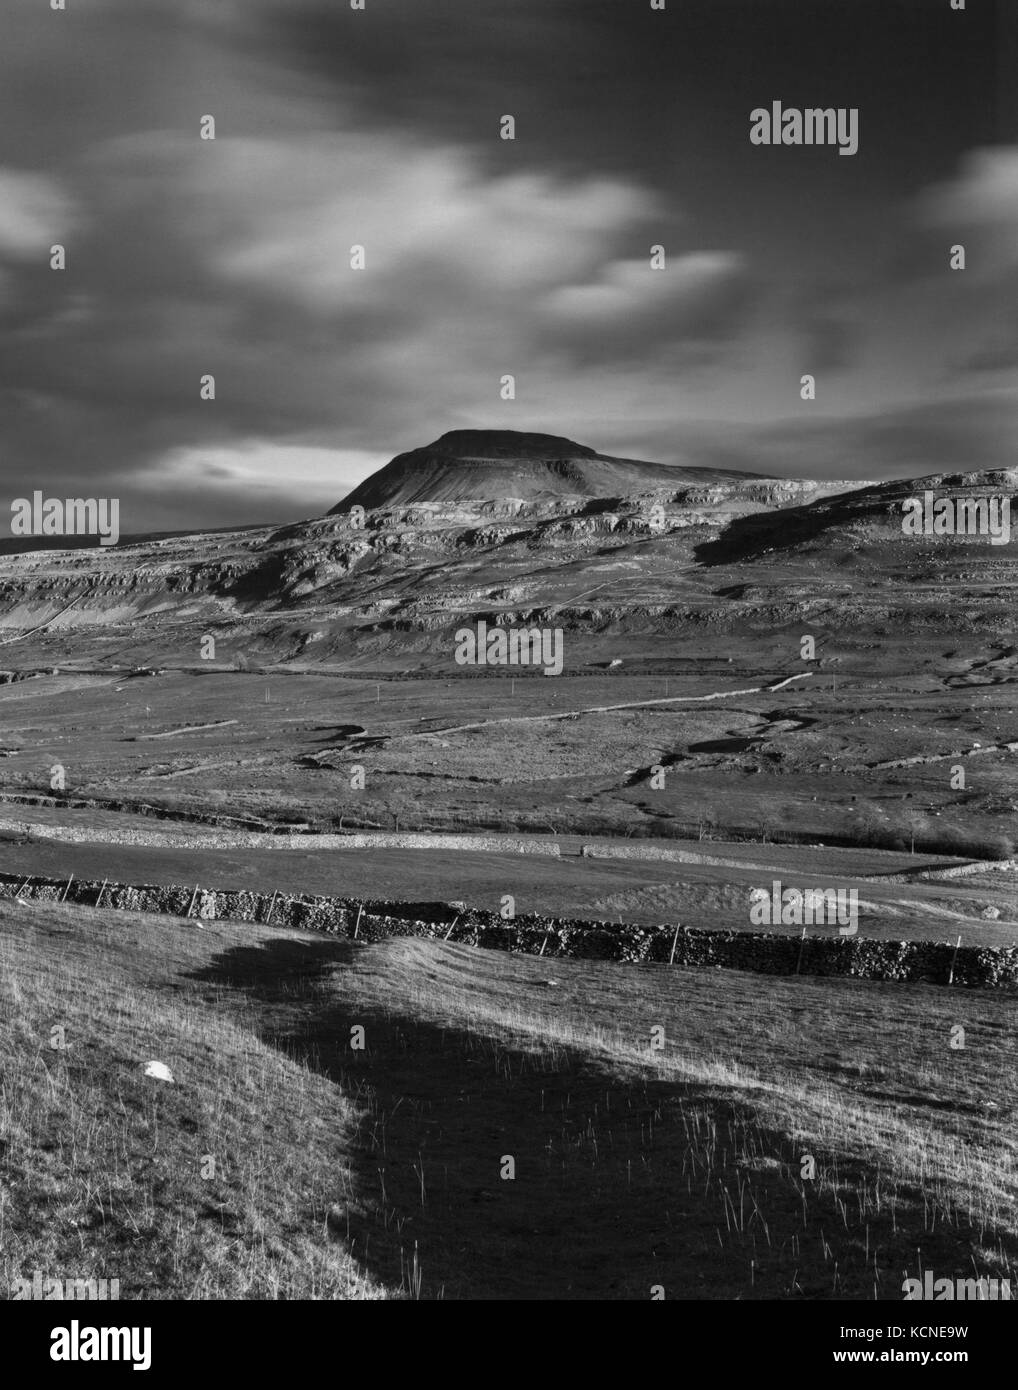 Blick ESE von Twisleton Narbe Ende über die Doe-Tal zu Ingleborough Hill, Yorks, England's höchste hillfort & Hochburg der Eisenzeit Briganten. Stockfoto